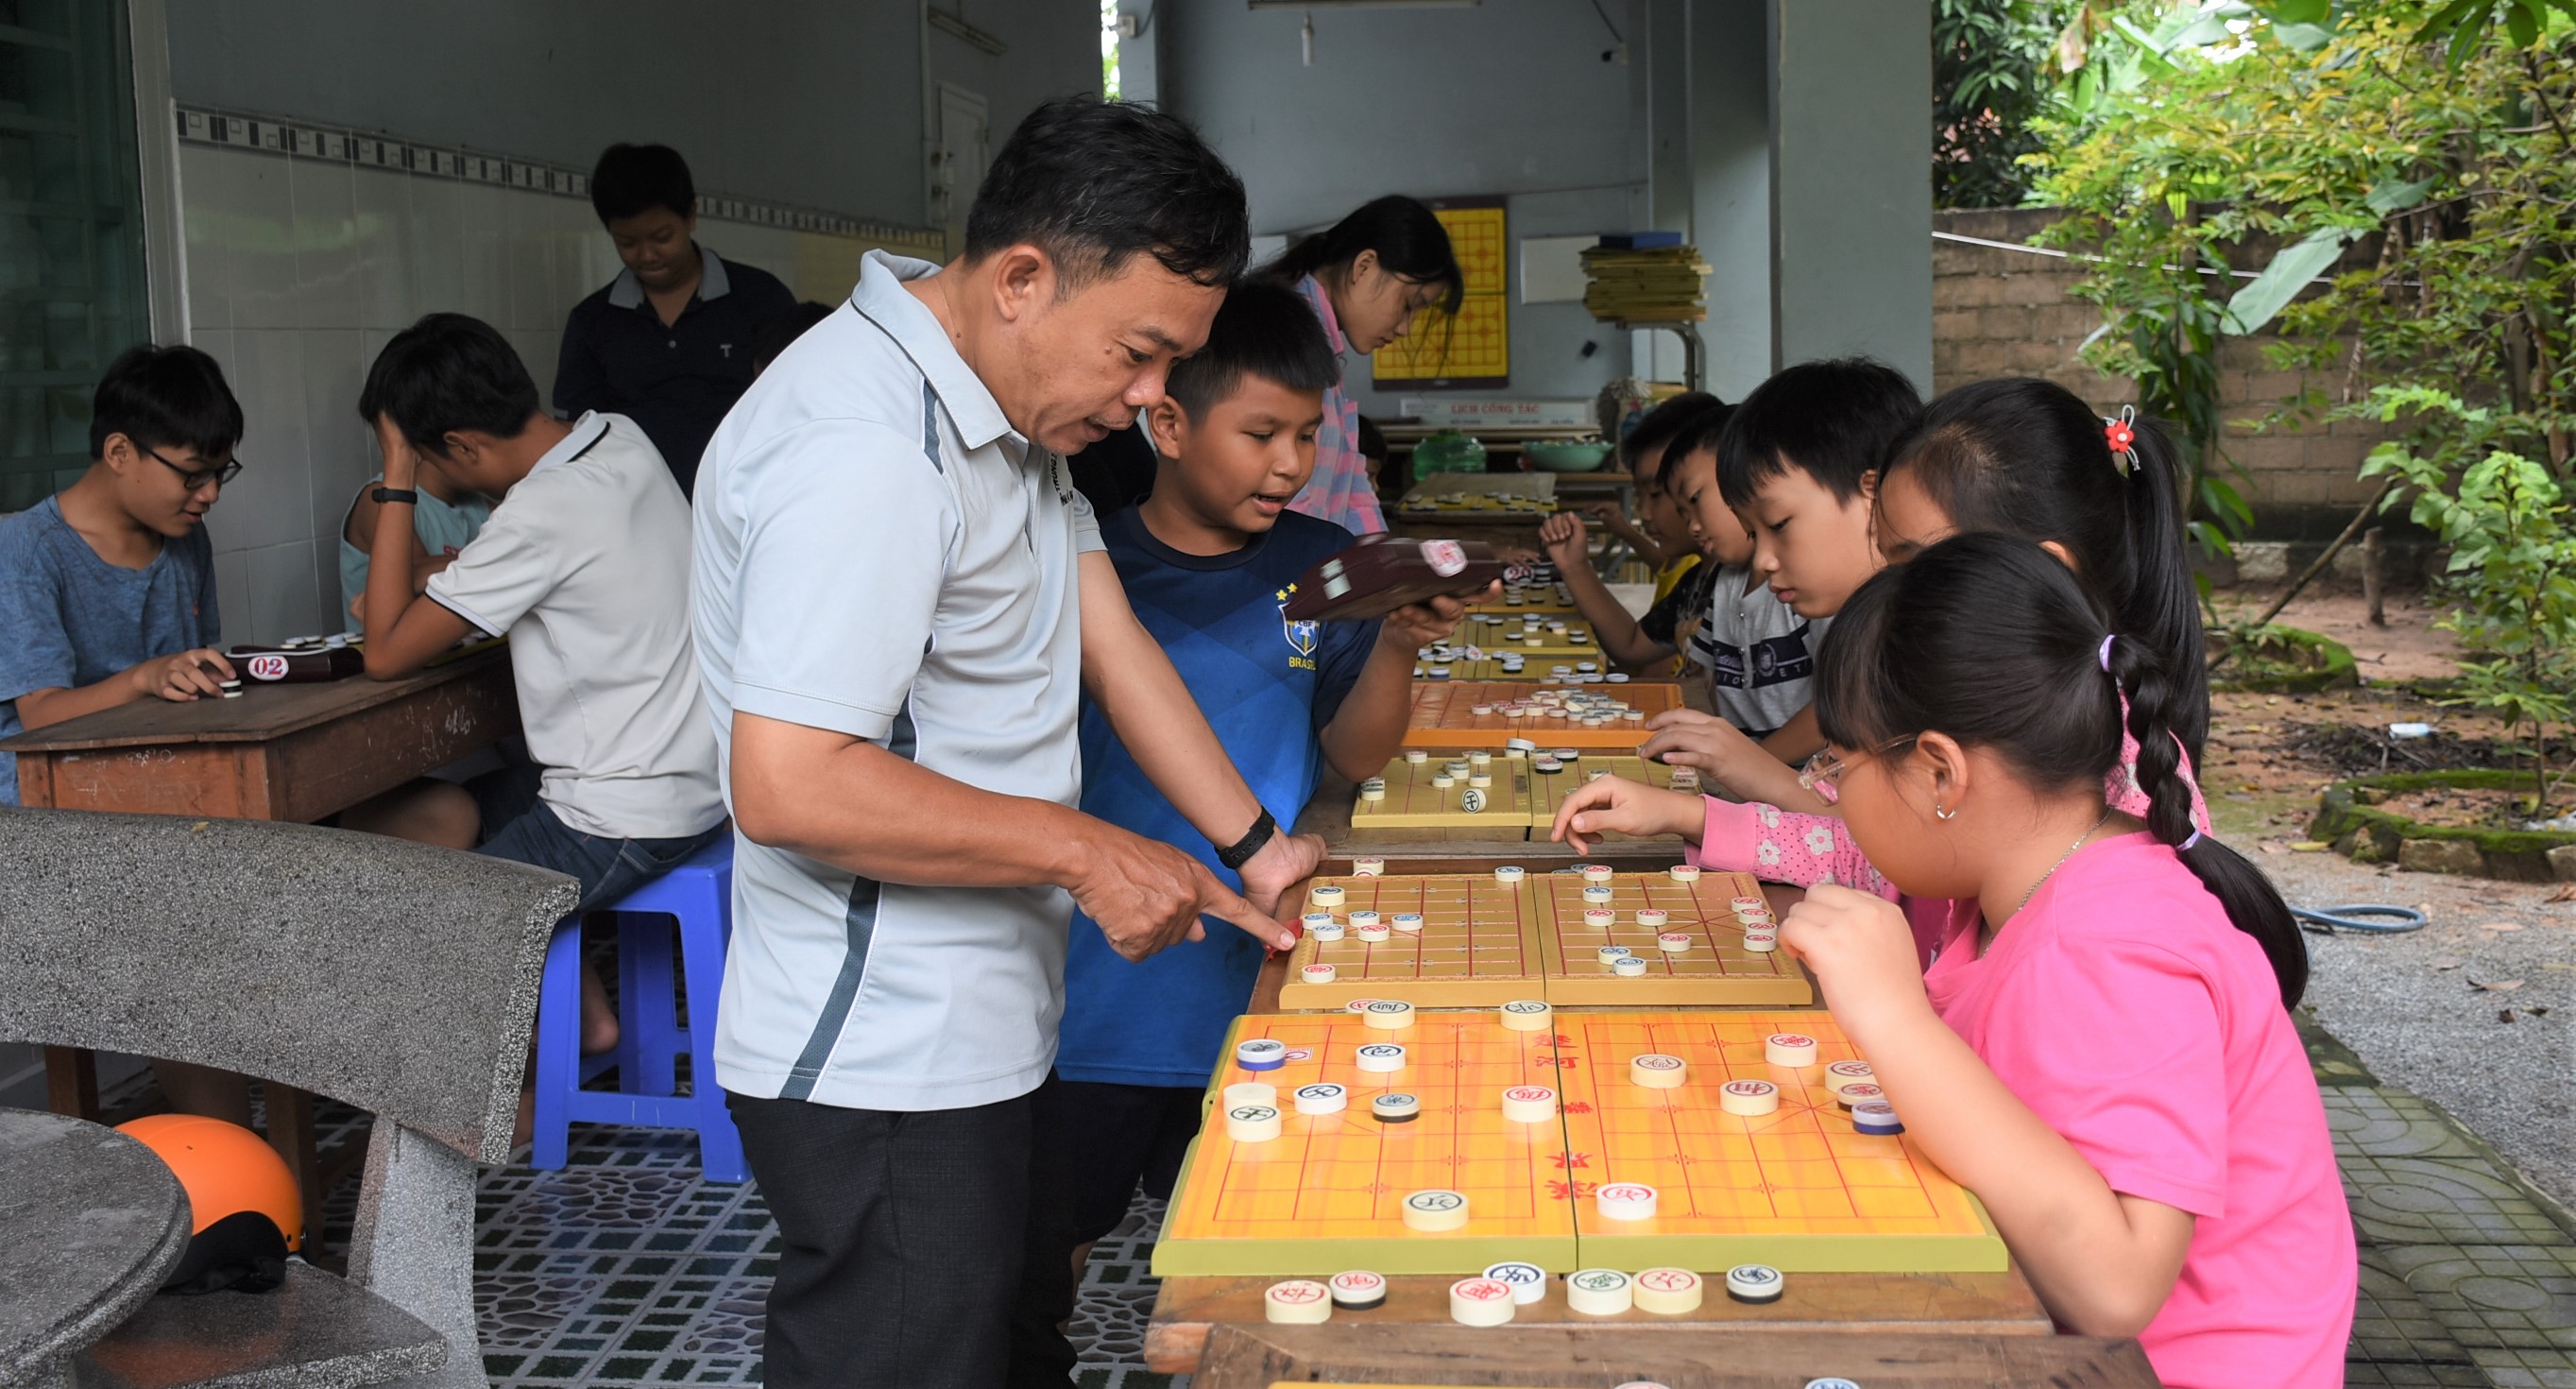 HLV Nguyễn Thành Trí phân tích những nước cờ cho học trò.